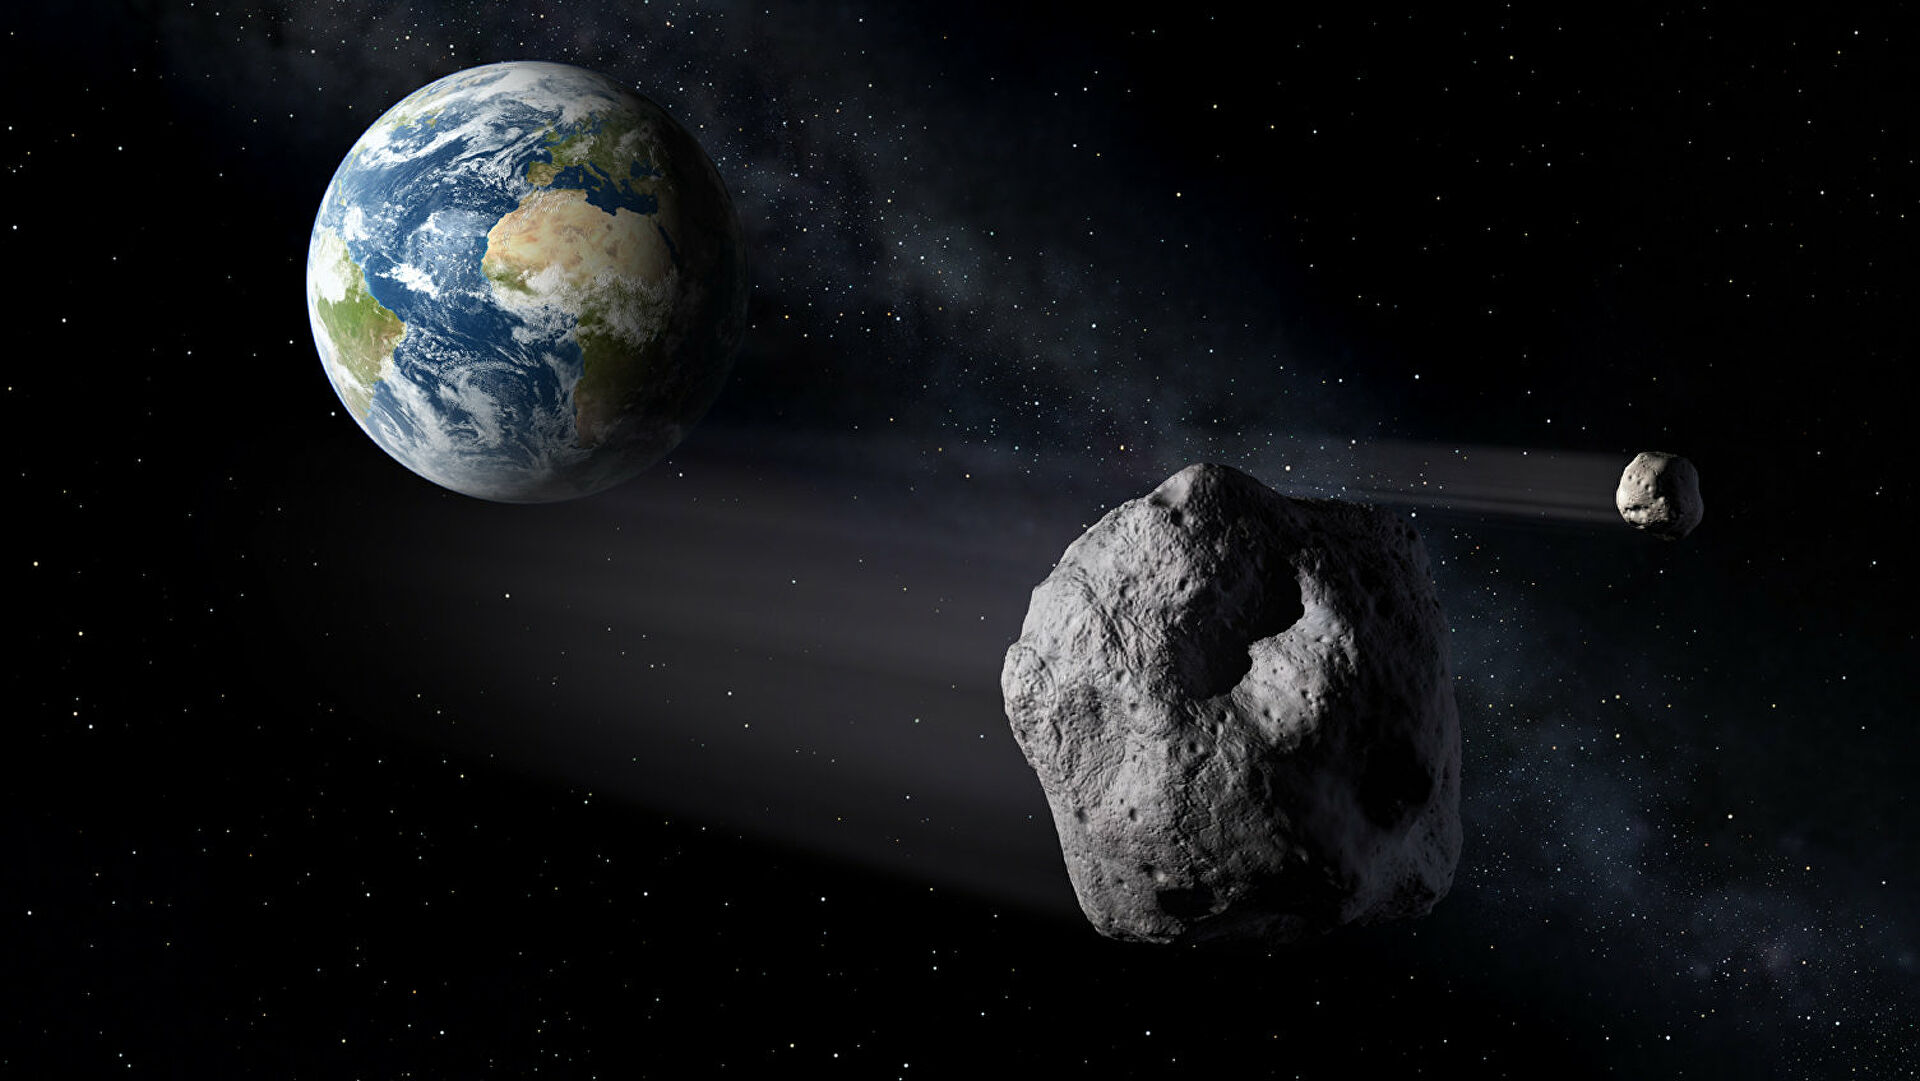 Километровый астероид приблизится к Земле во второй половине января 2022 года, предупреждает NASA